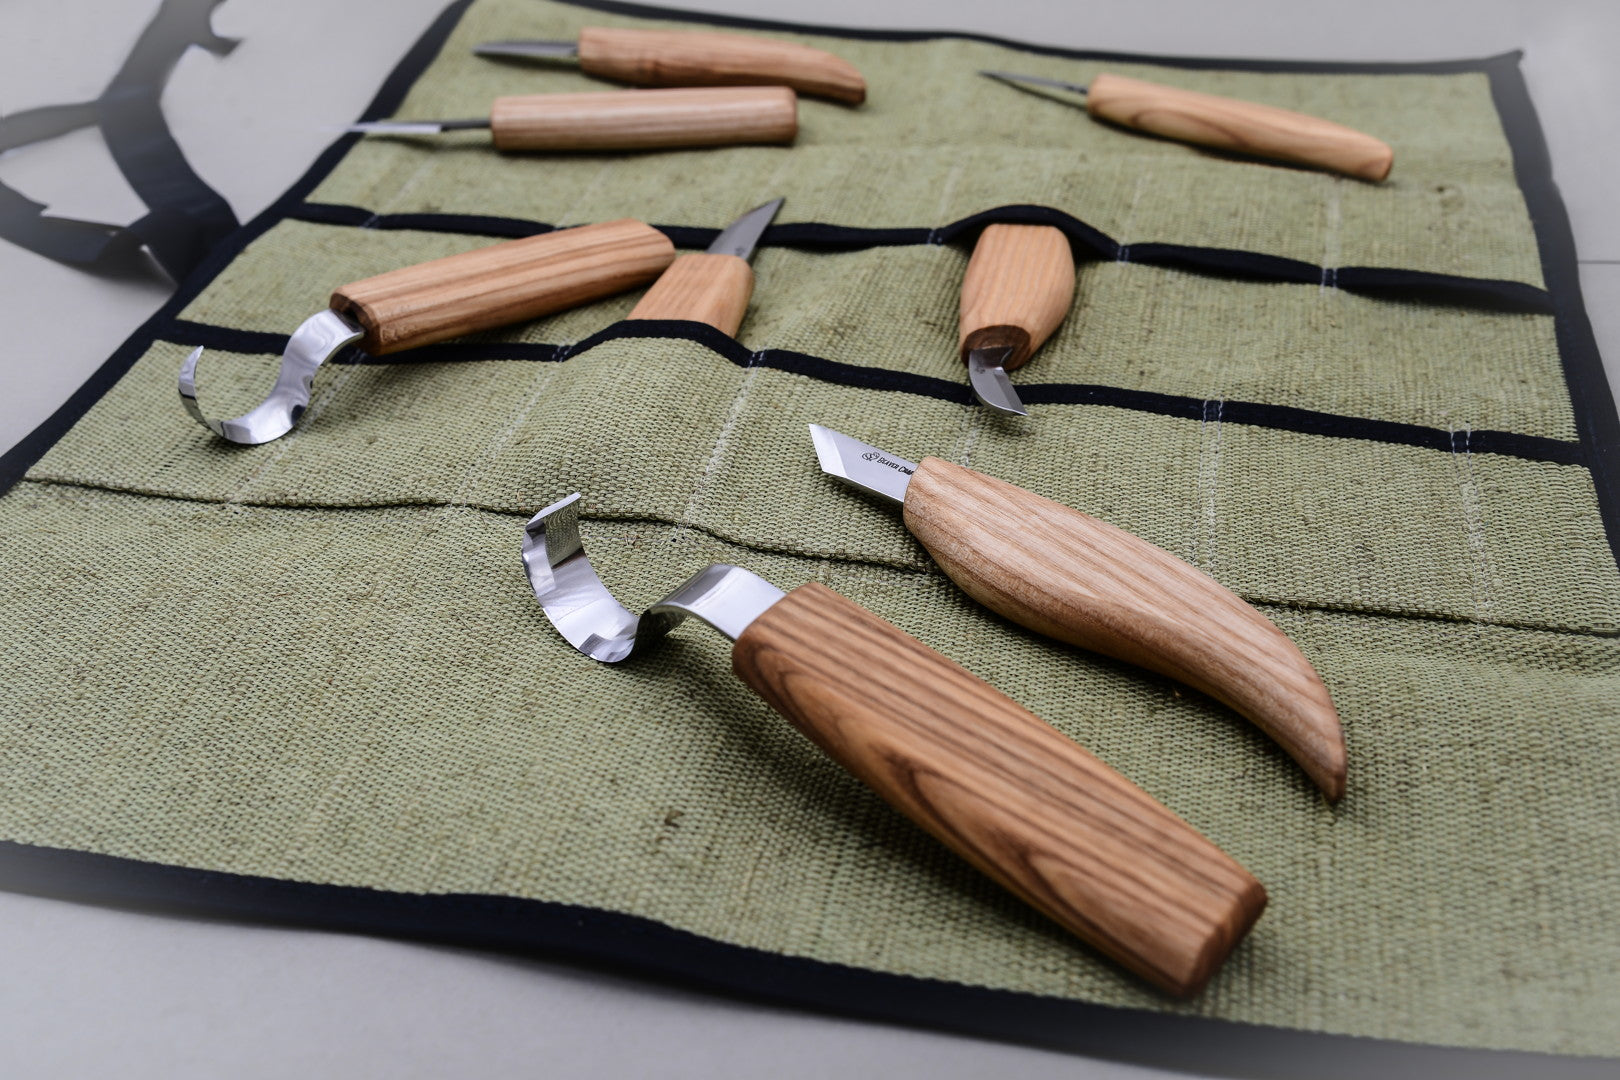 Buy S09L – Set of 4 Knives in Tool Roll (Left handed) online - BeaverCraft  – BeaverCraft Tools